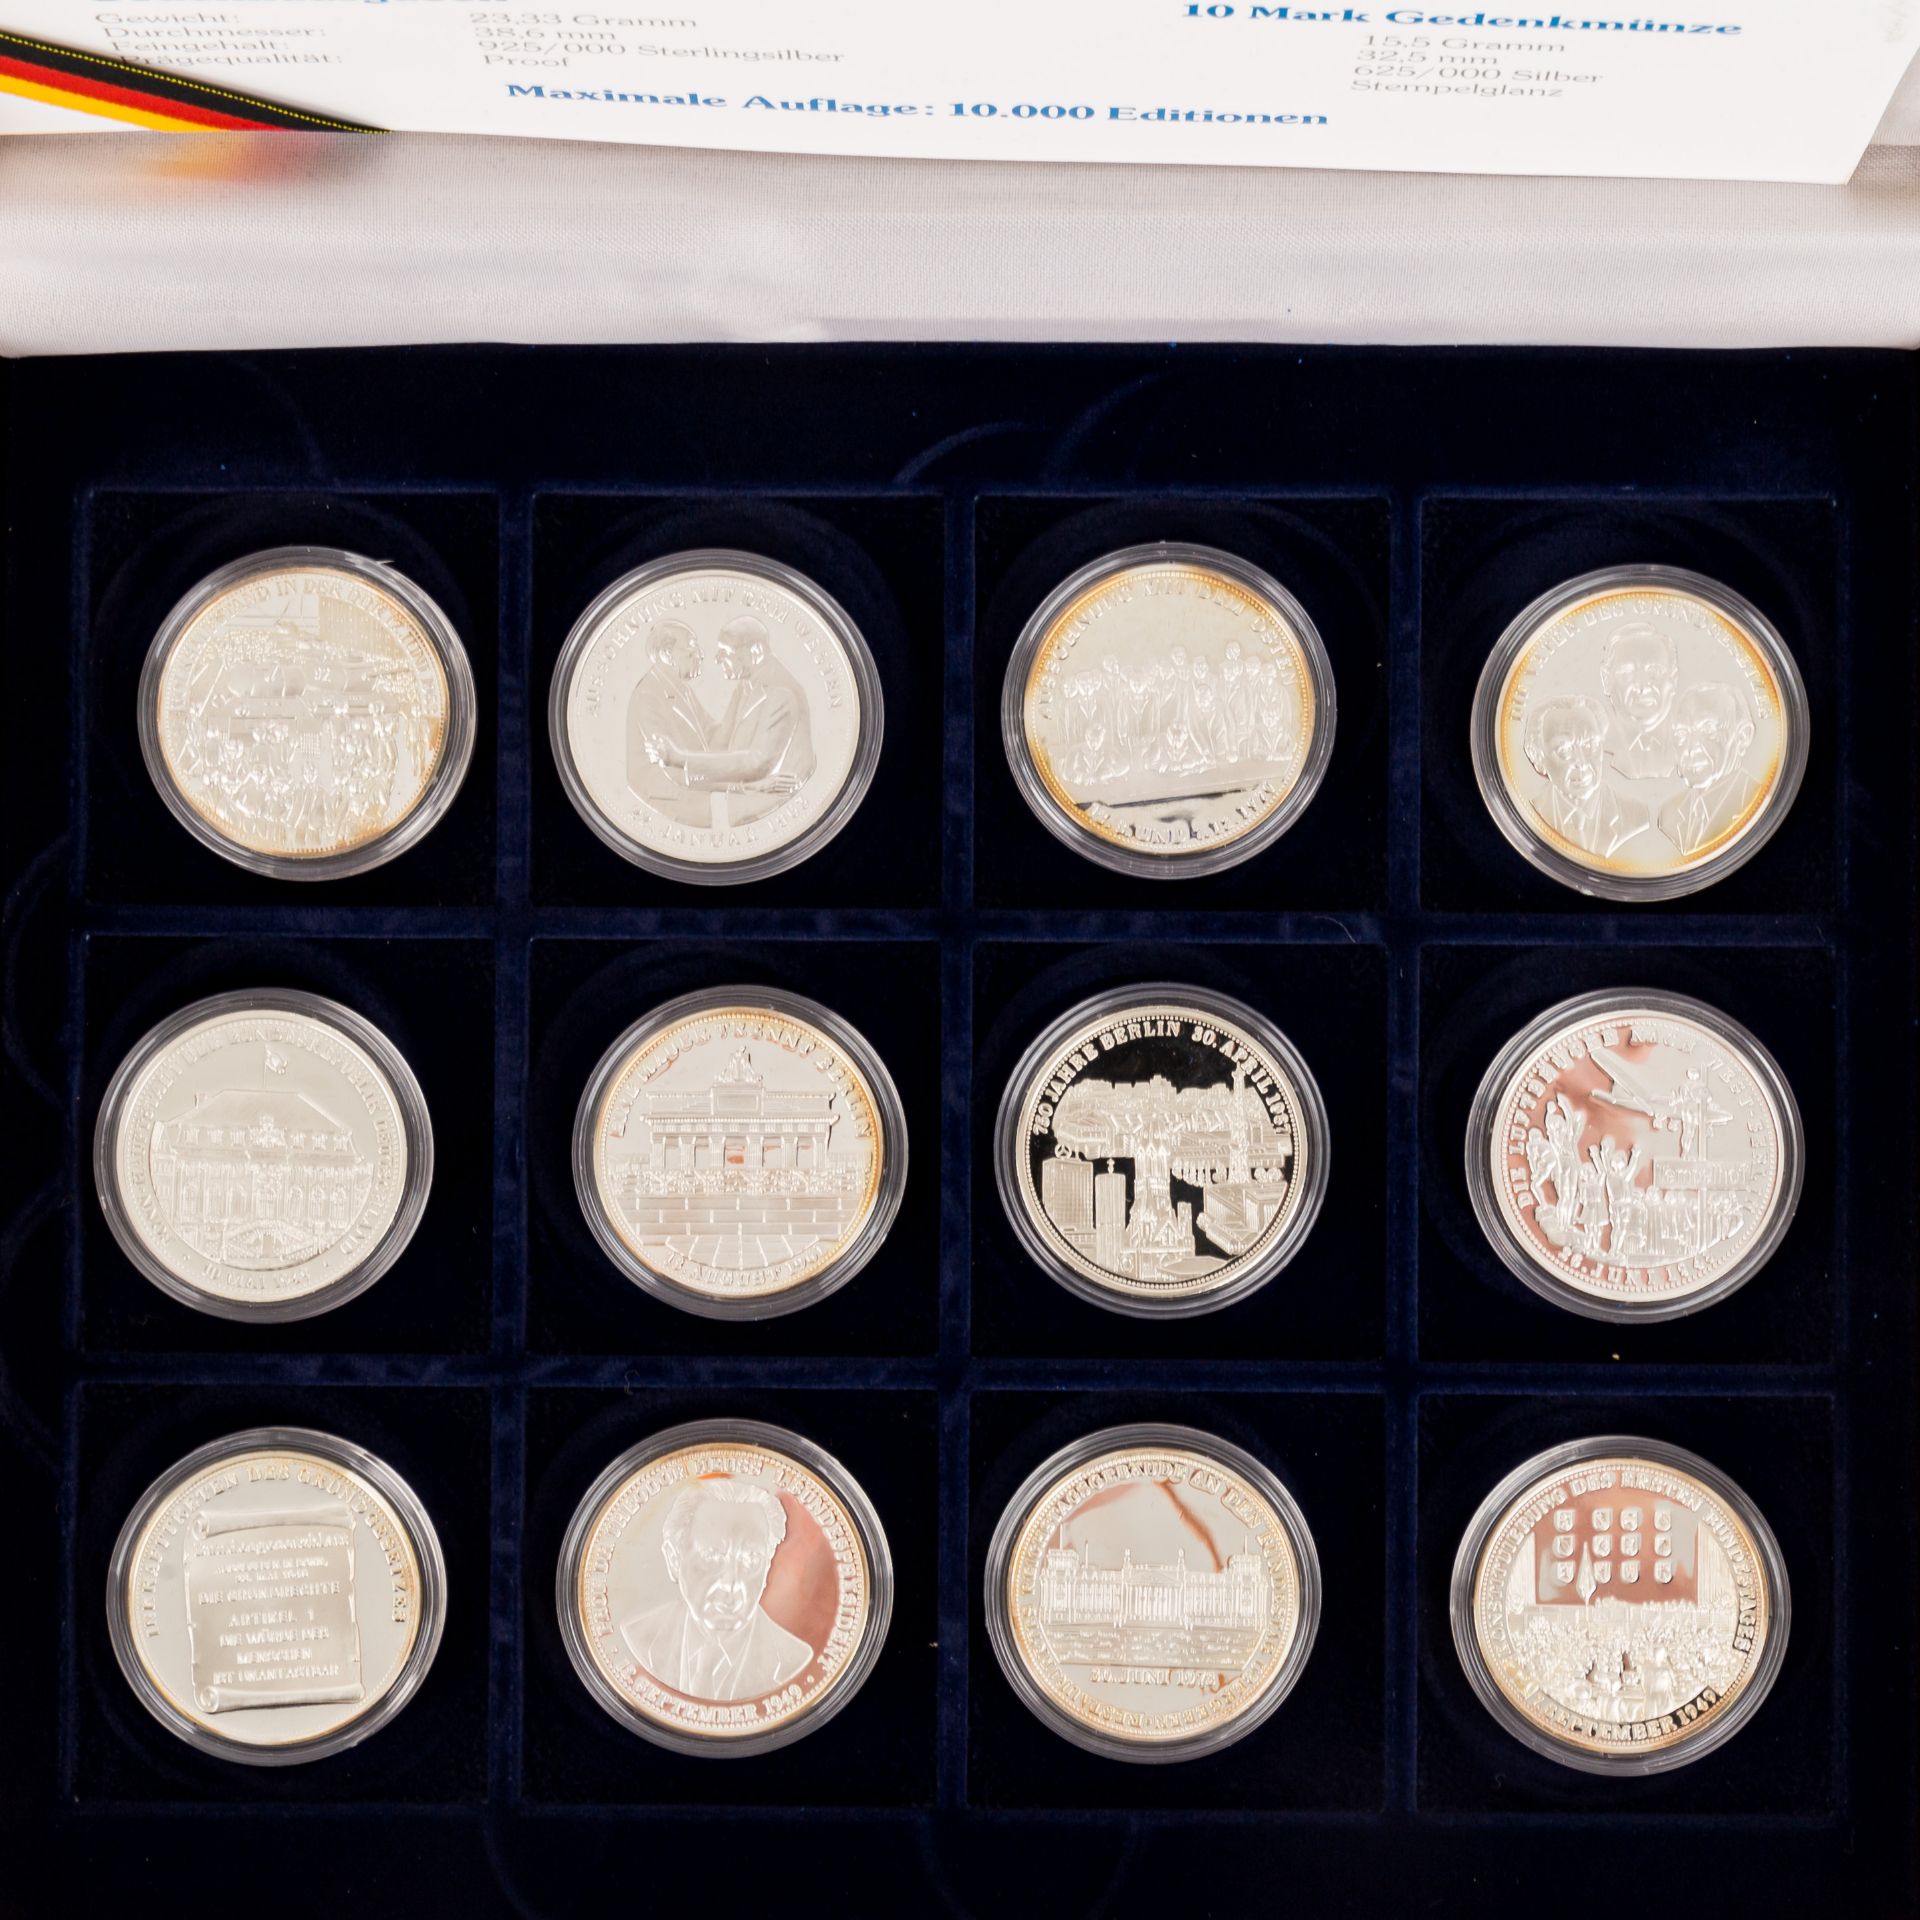 Münzen und Medaillen, BRD Gedenkmünzen,Österreich Schillinge, Medaillen 40 Jahre BRD fast nahezu 500 - Bild 2 aus 12